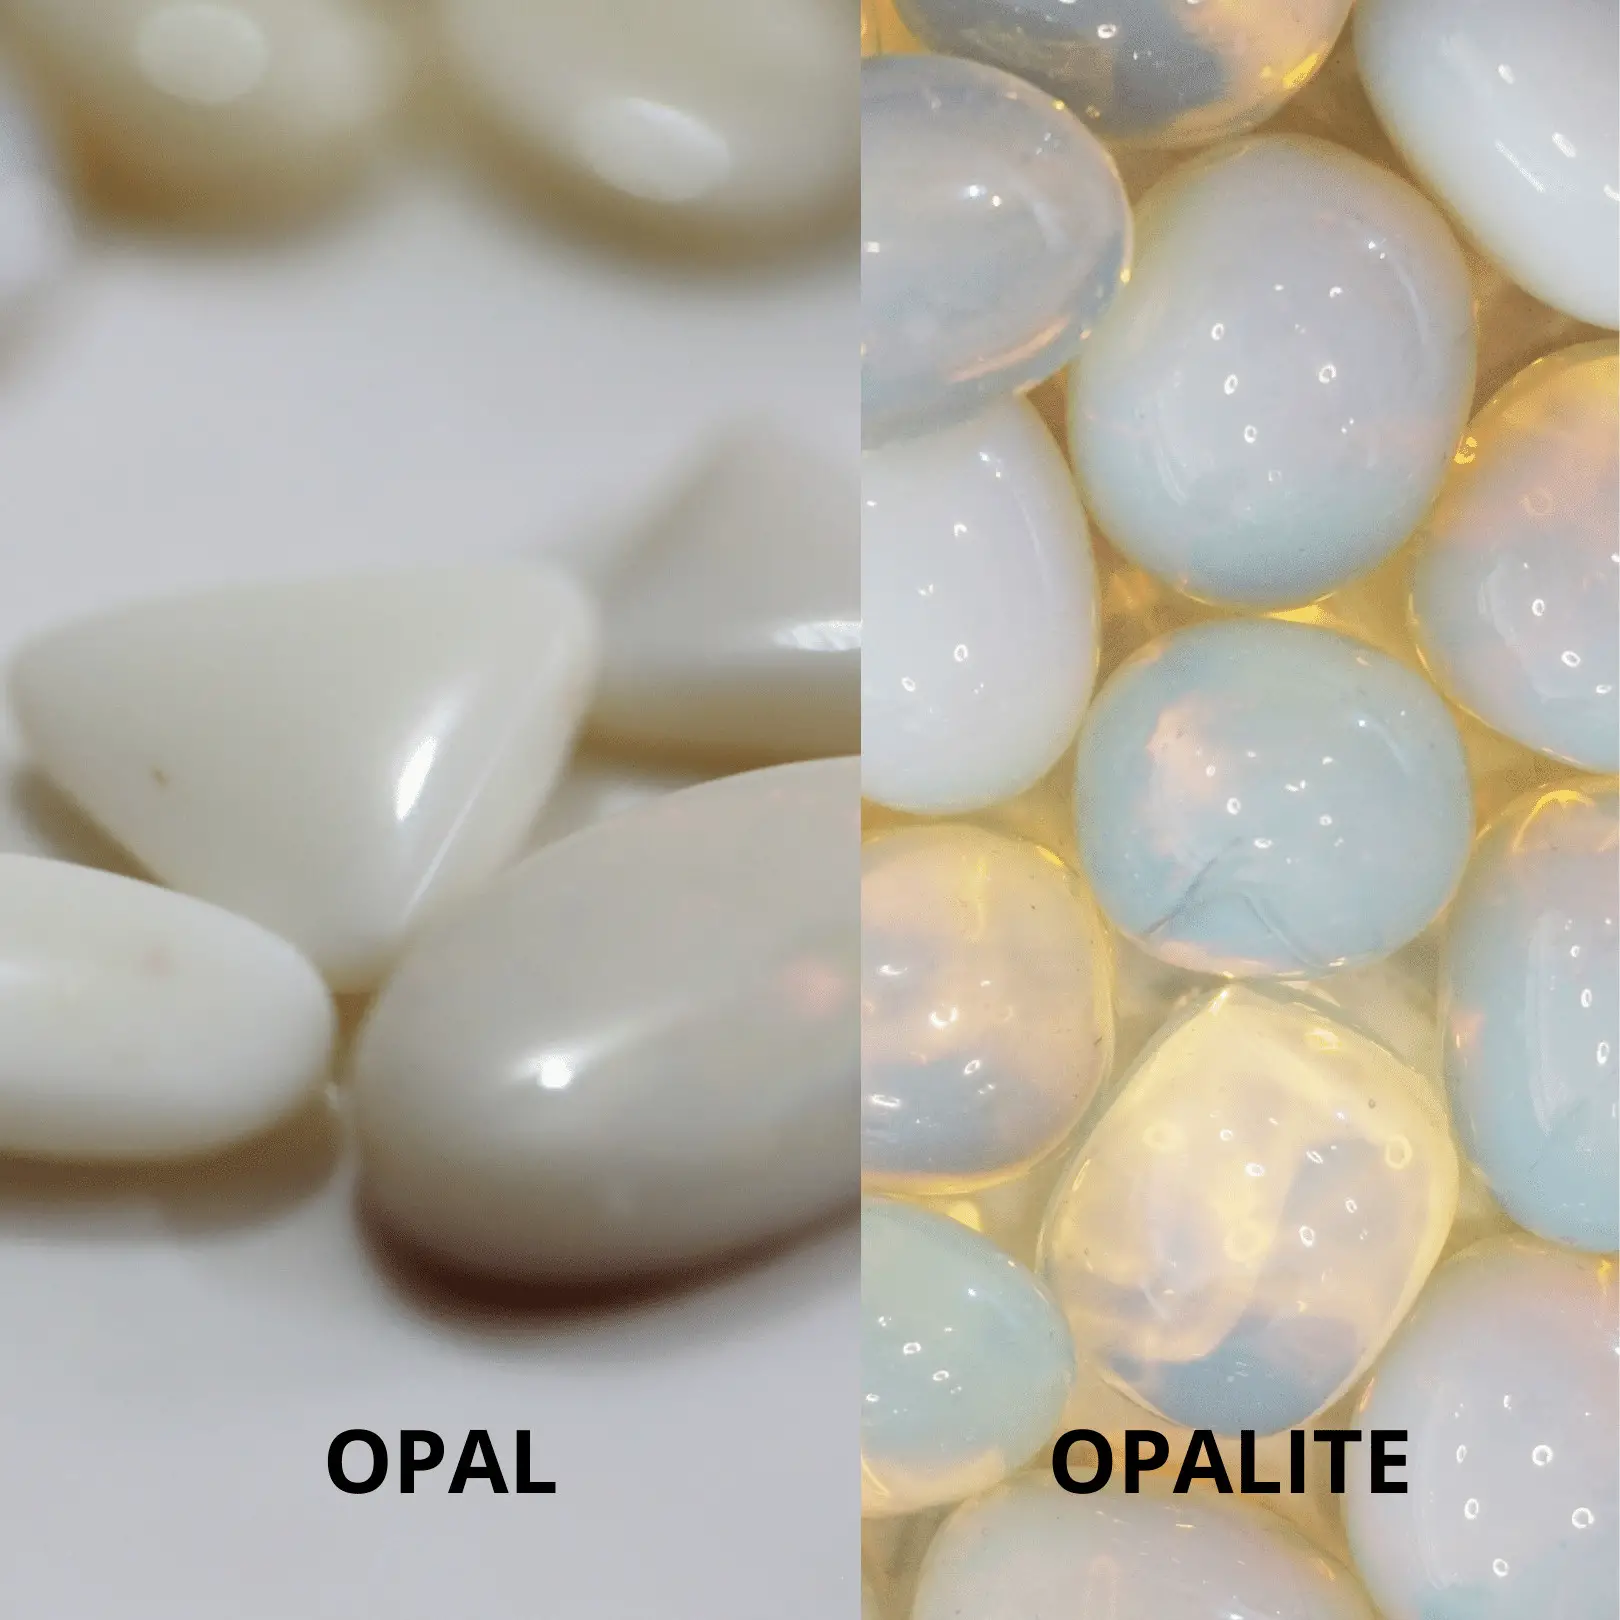 Opal vs Opalite